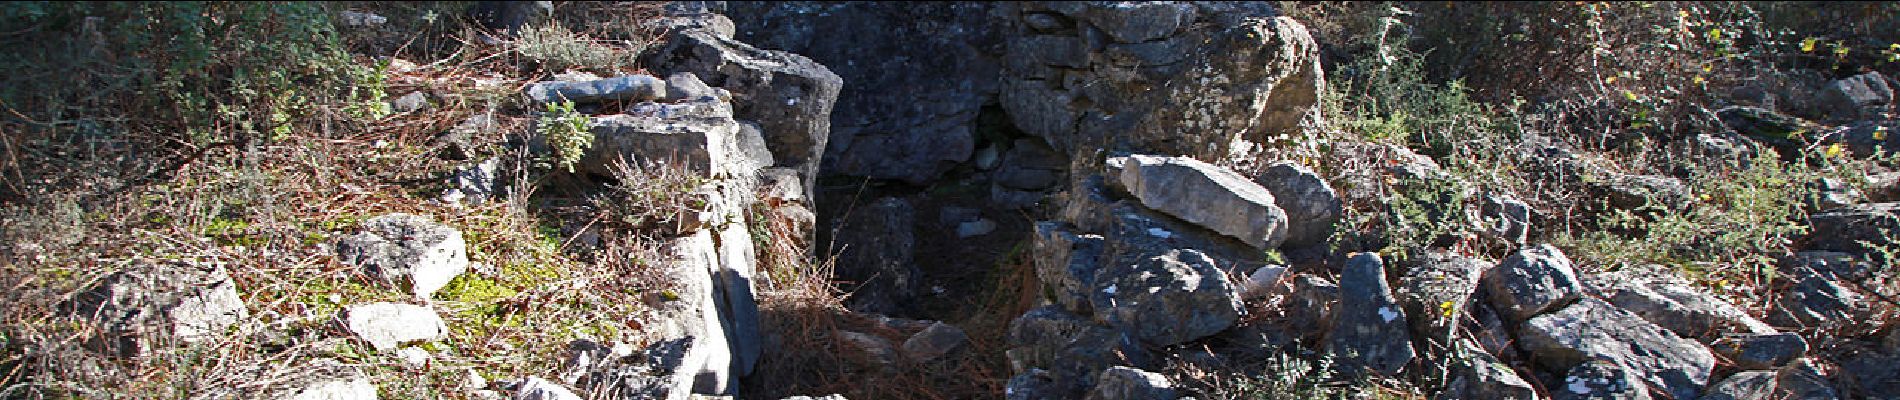 POI Saint-Cézaire-sur-Siagne - dolmen-montauroux - Photo